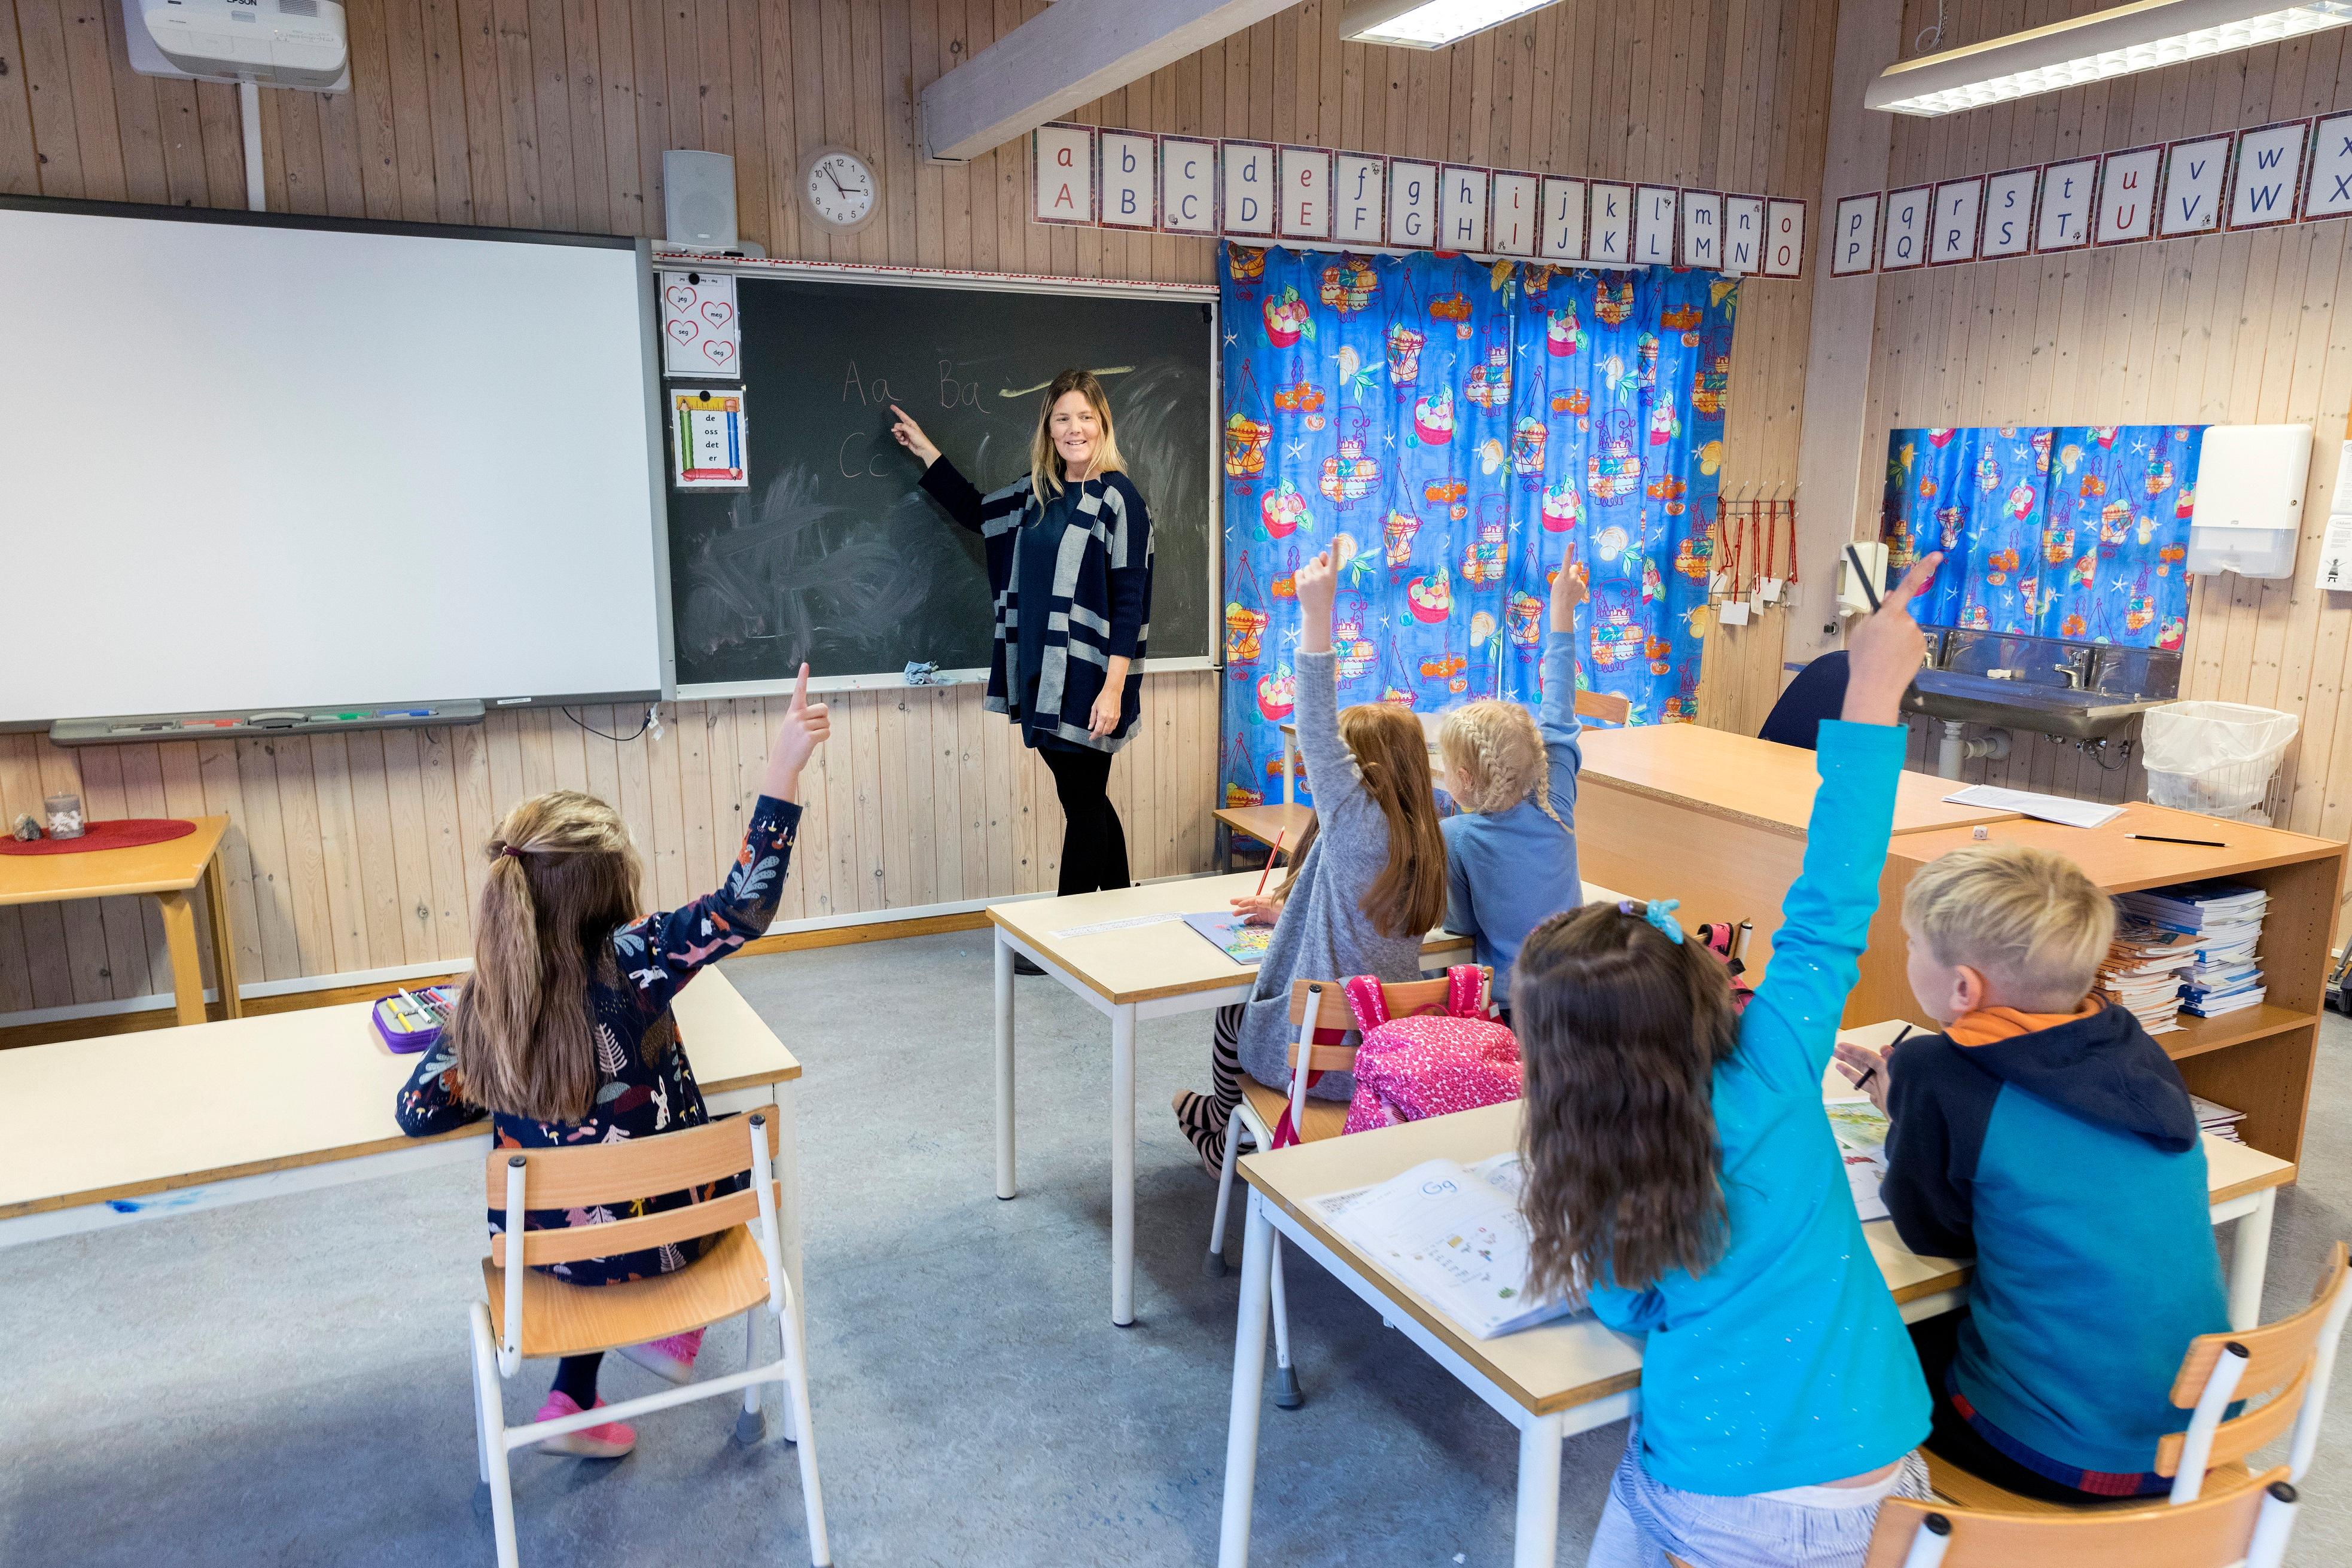 Trondheim  20171009.
Elever og lærer i klassesituasjon på barneskole. 
Modellklarert.
Foto: Gorm Kallestad / NTB scanpix